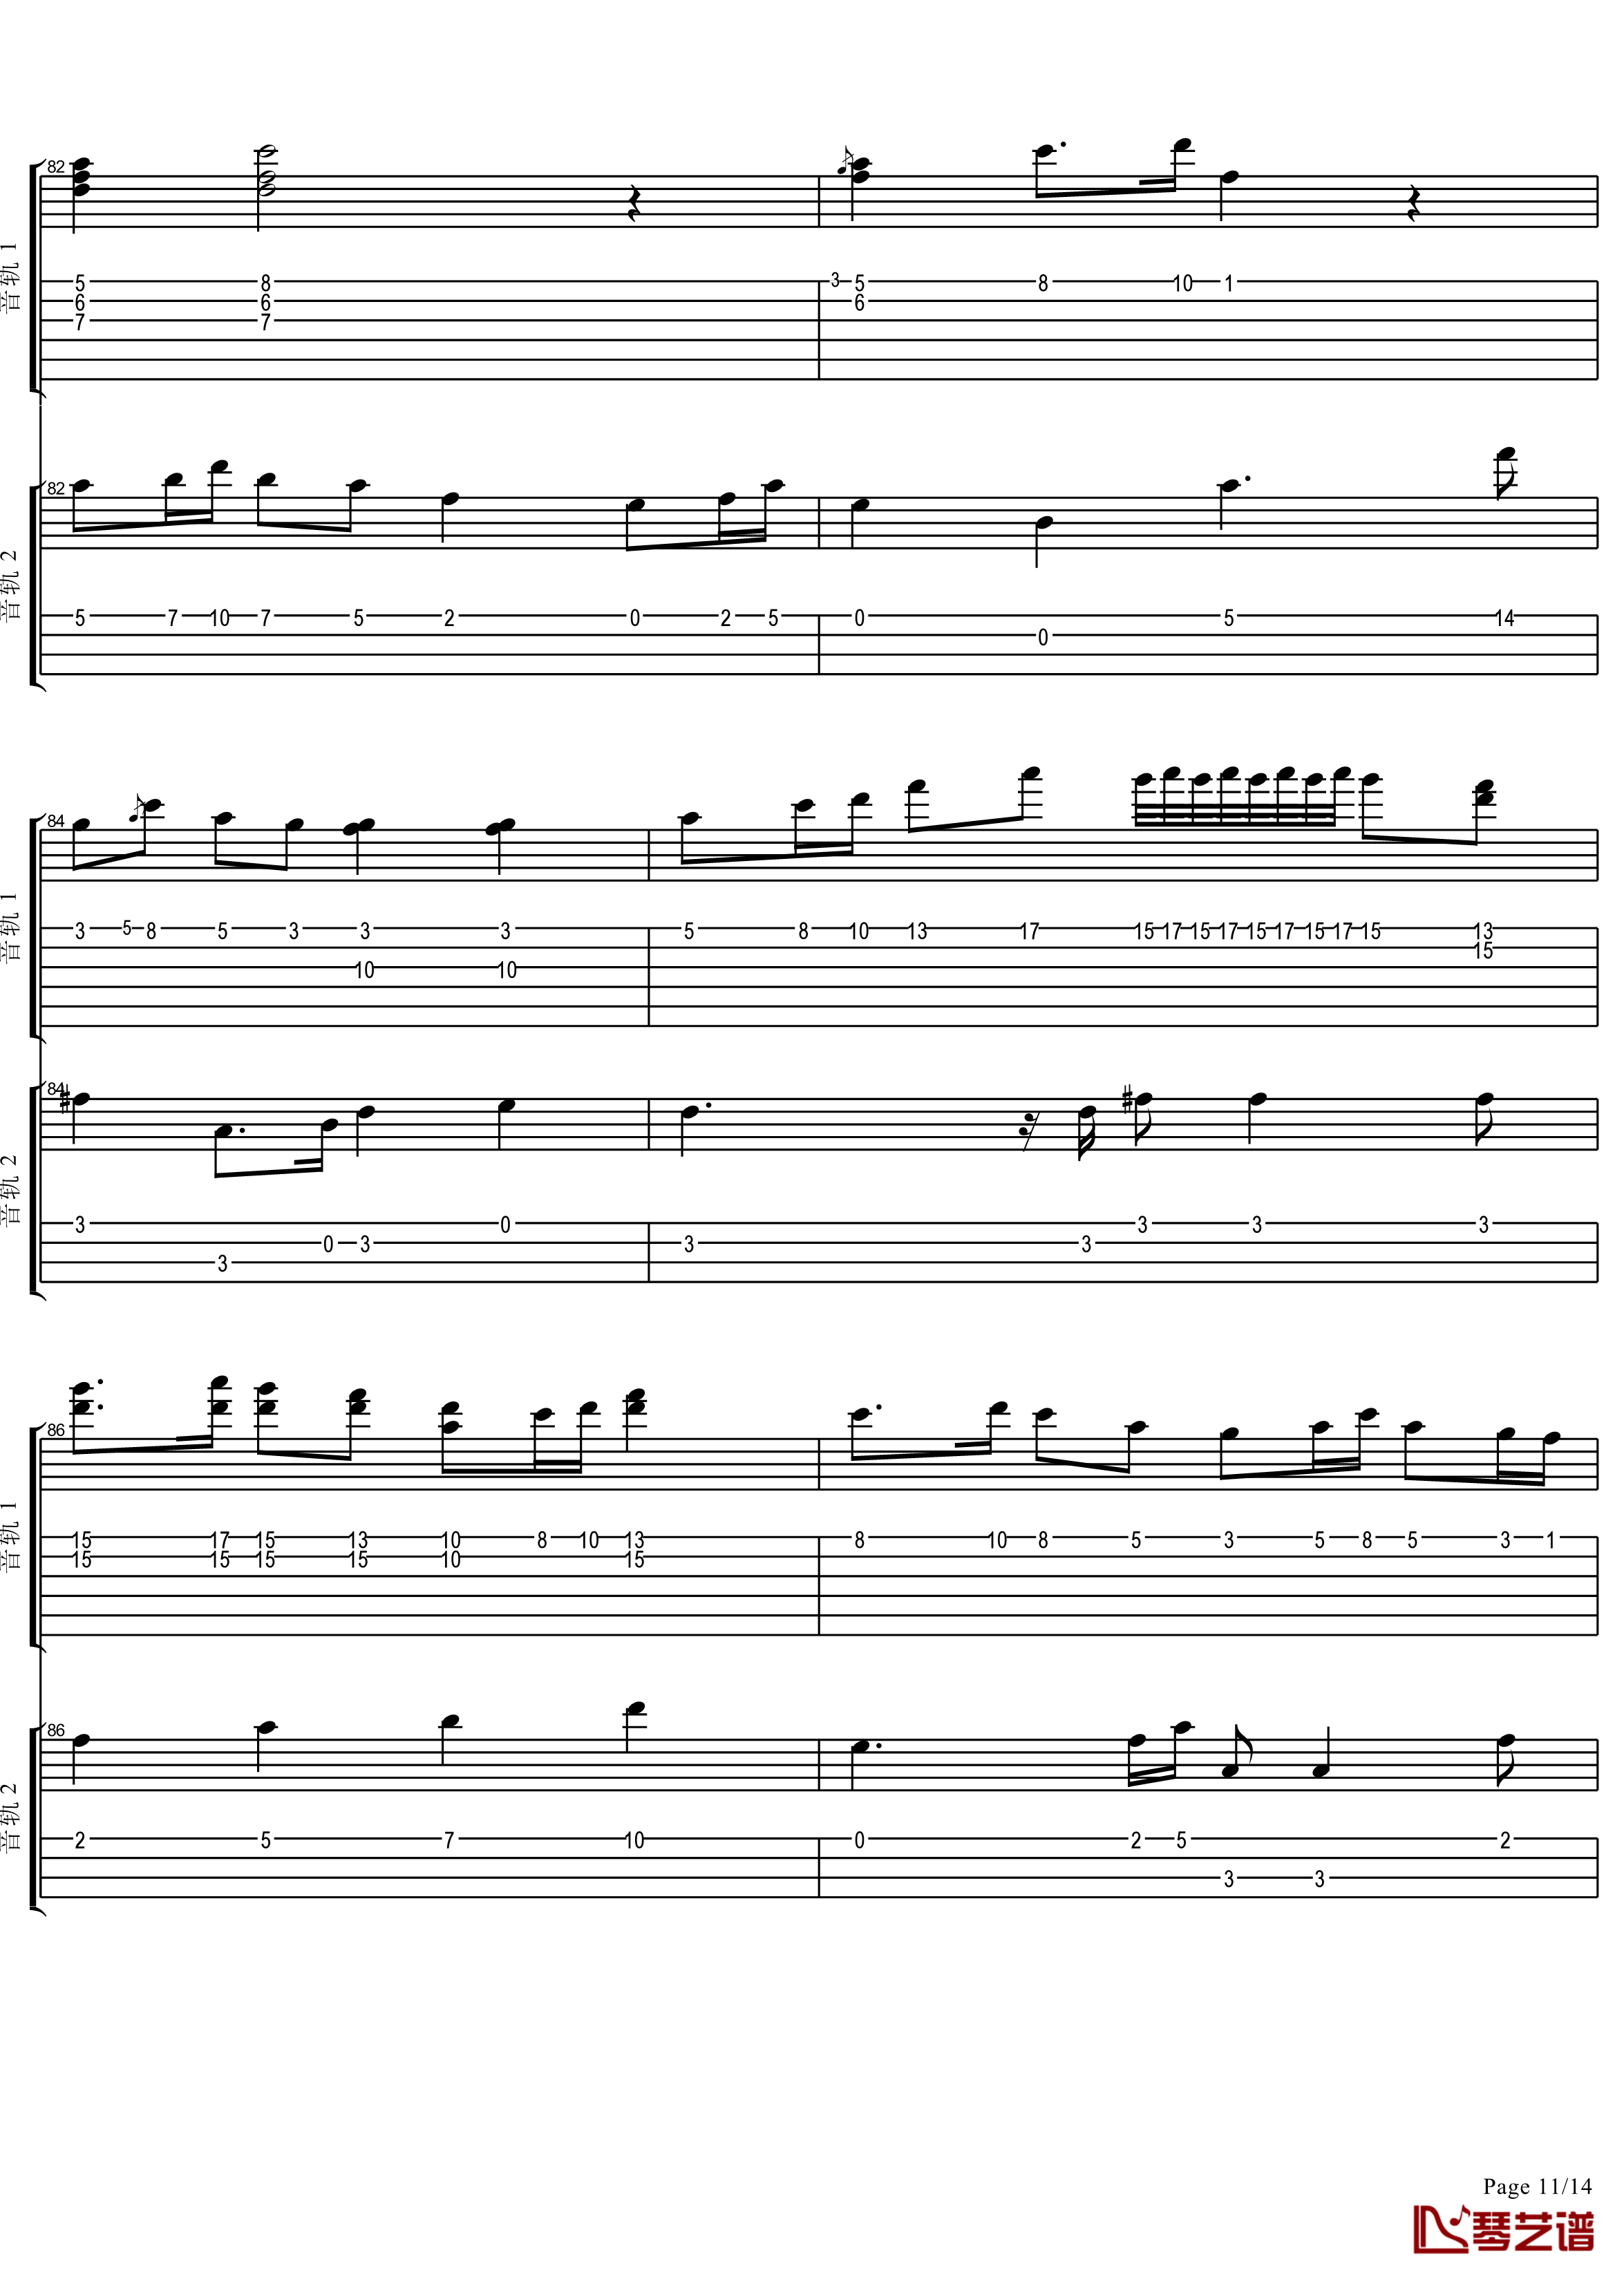 十八般武艺钢琴谱-完美演奏版-王力宏11